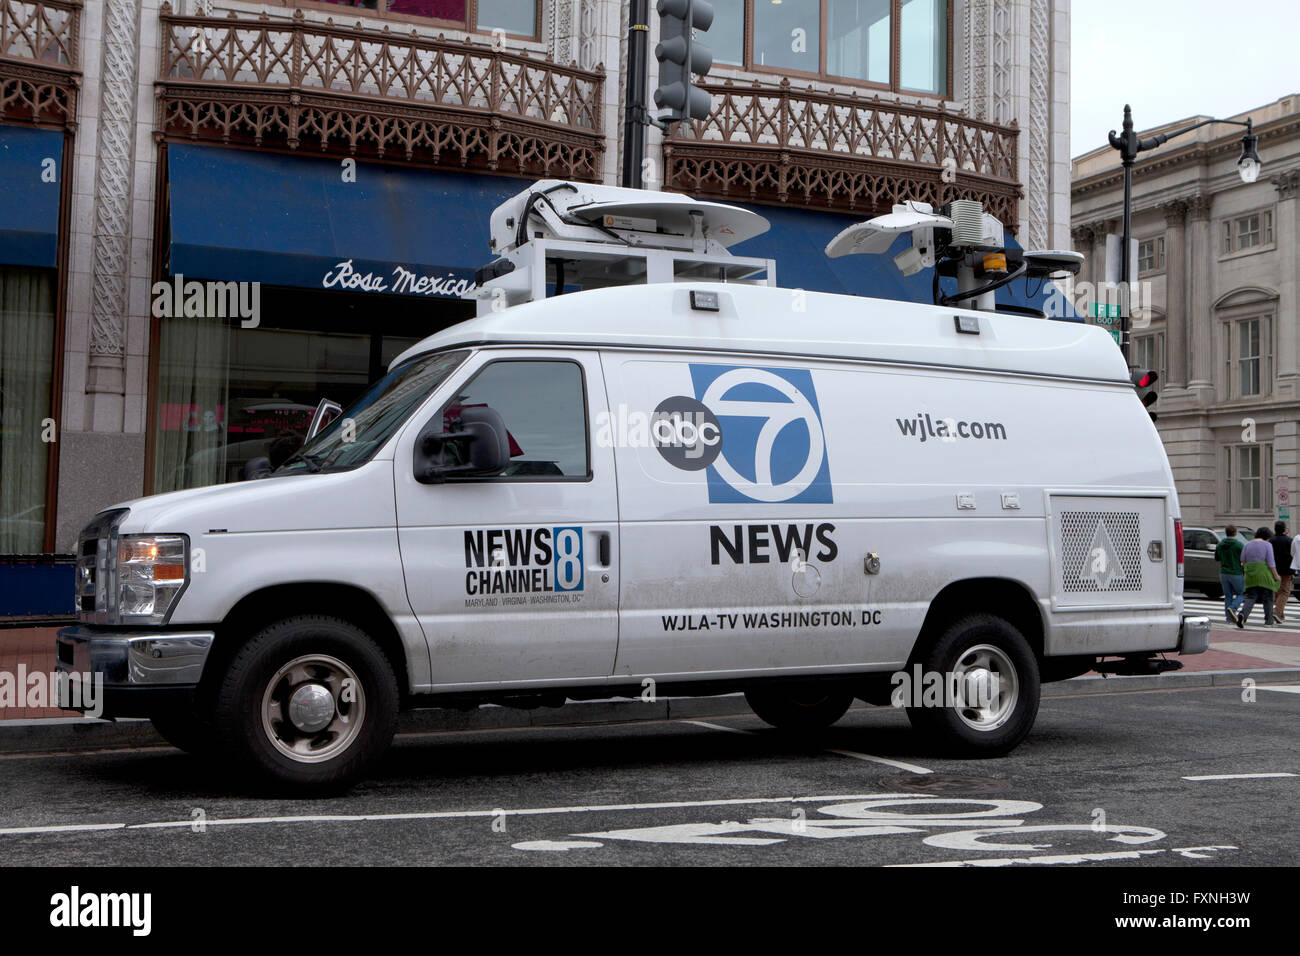 ABC News 7 satellite van - Washington, DC USA Stock Photo - Alamy